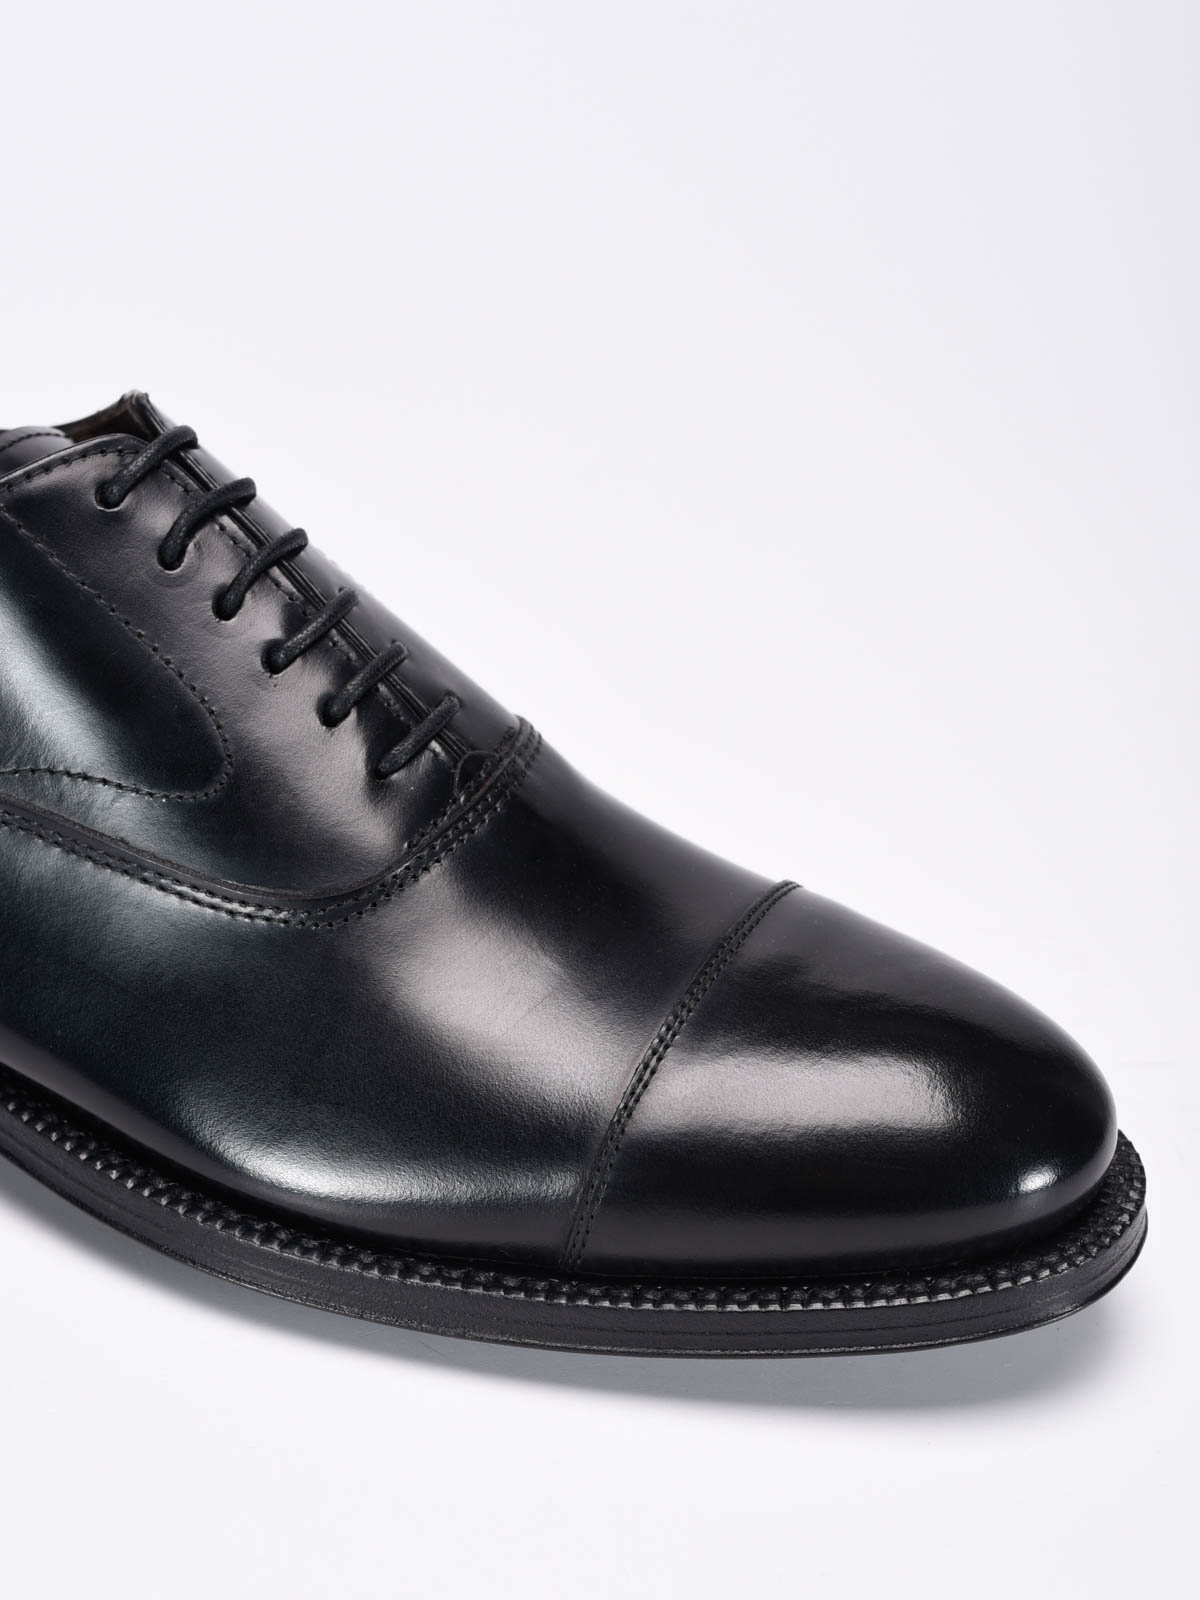 Handmade polished leather shoes 